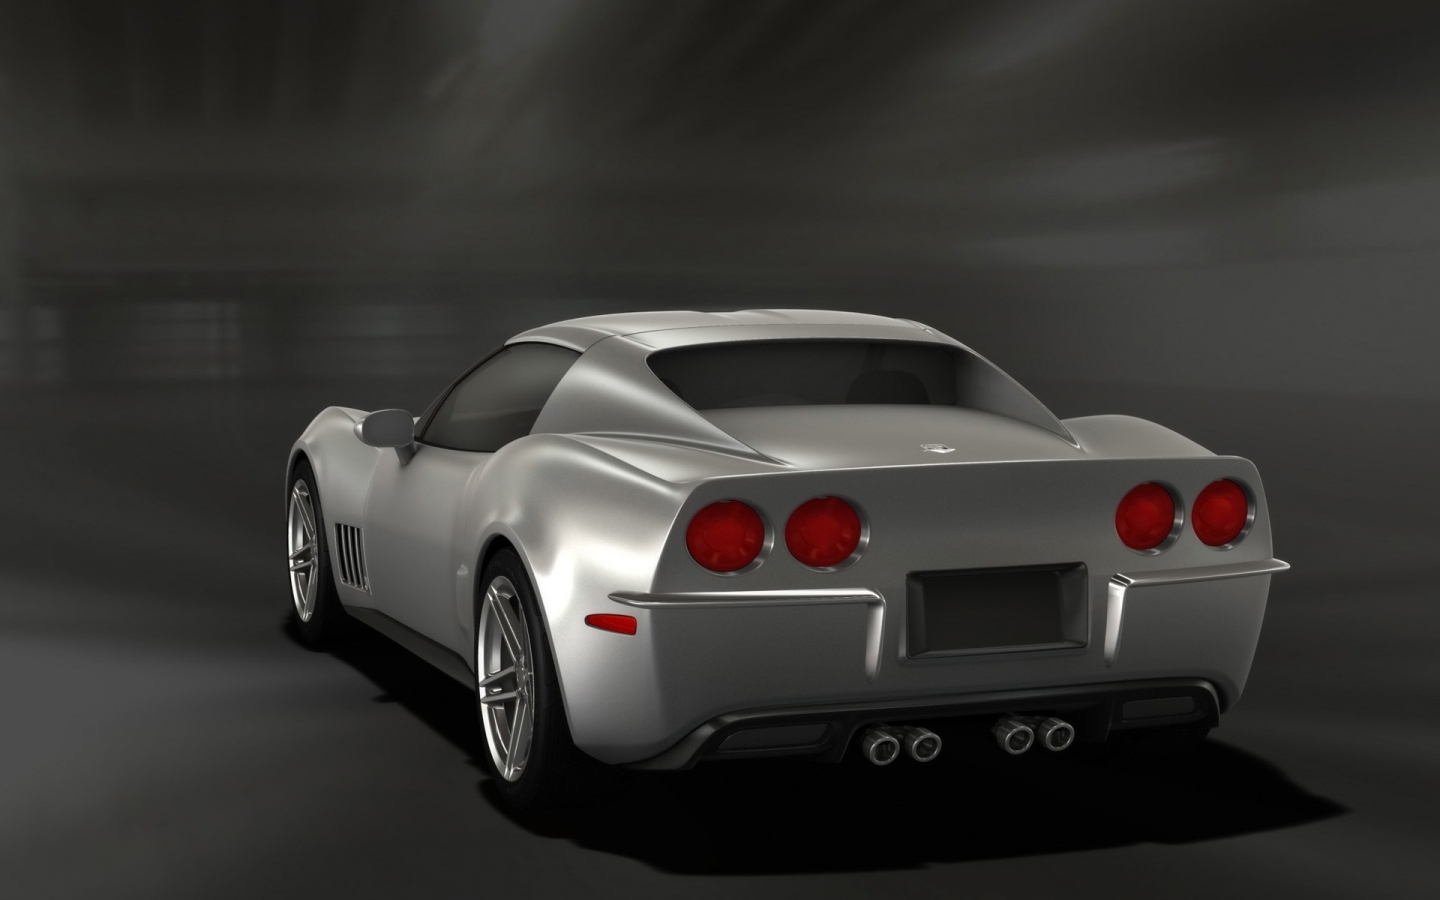 Retro Corvette Stingray Silver Rear Angle 2009 for 1440 x 900 widescreen resolution